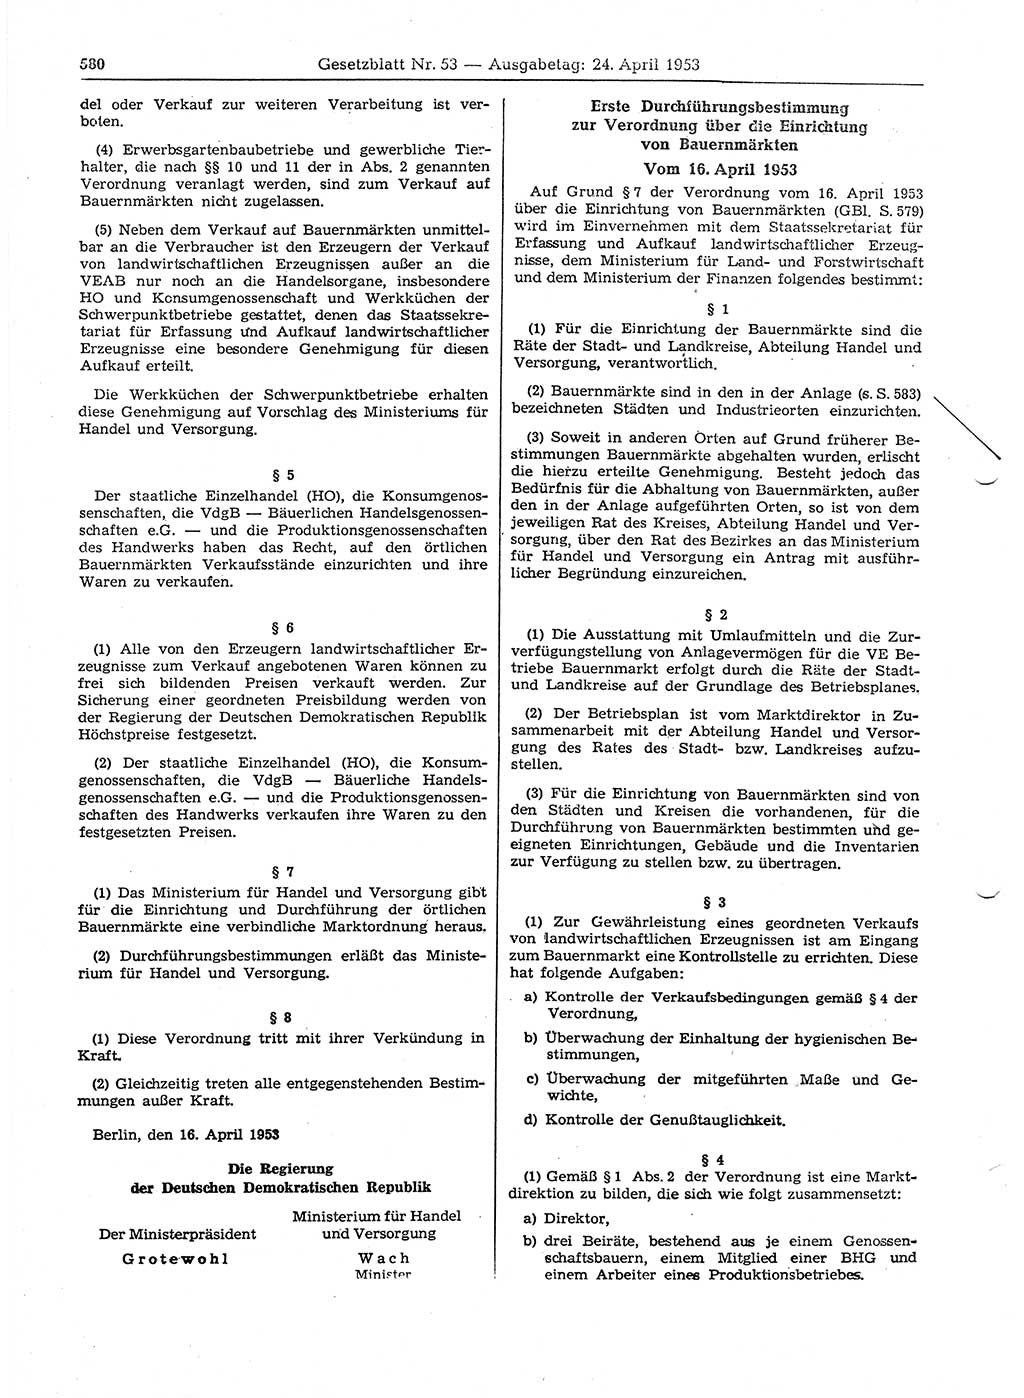 Gesetzblatt (GBl.) der Deutschen Demokratischen Republik (DDR) 1953, Seite 580 (GBl. DDR 1953, S. 580)